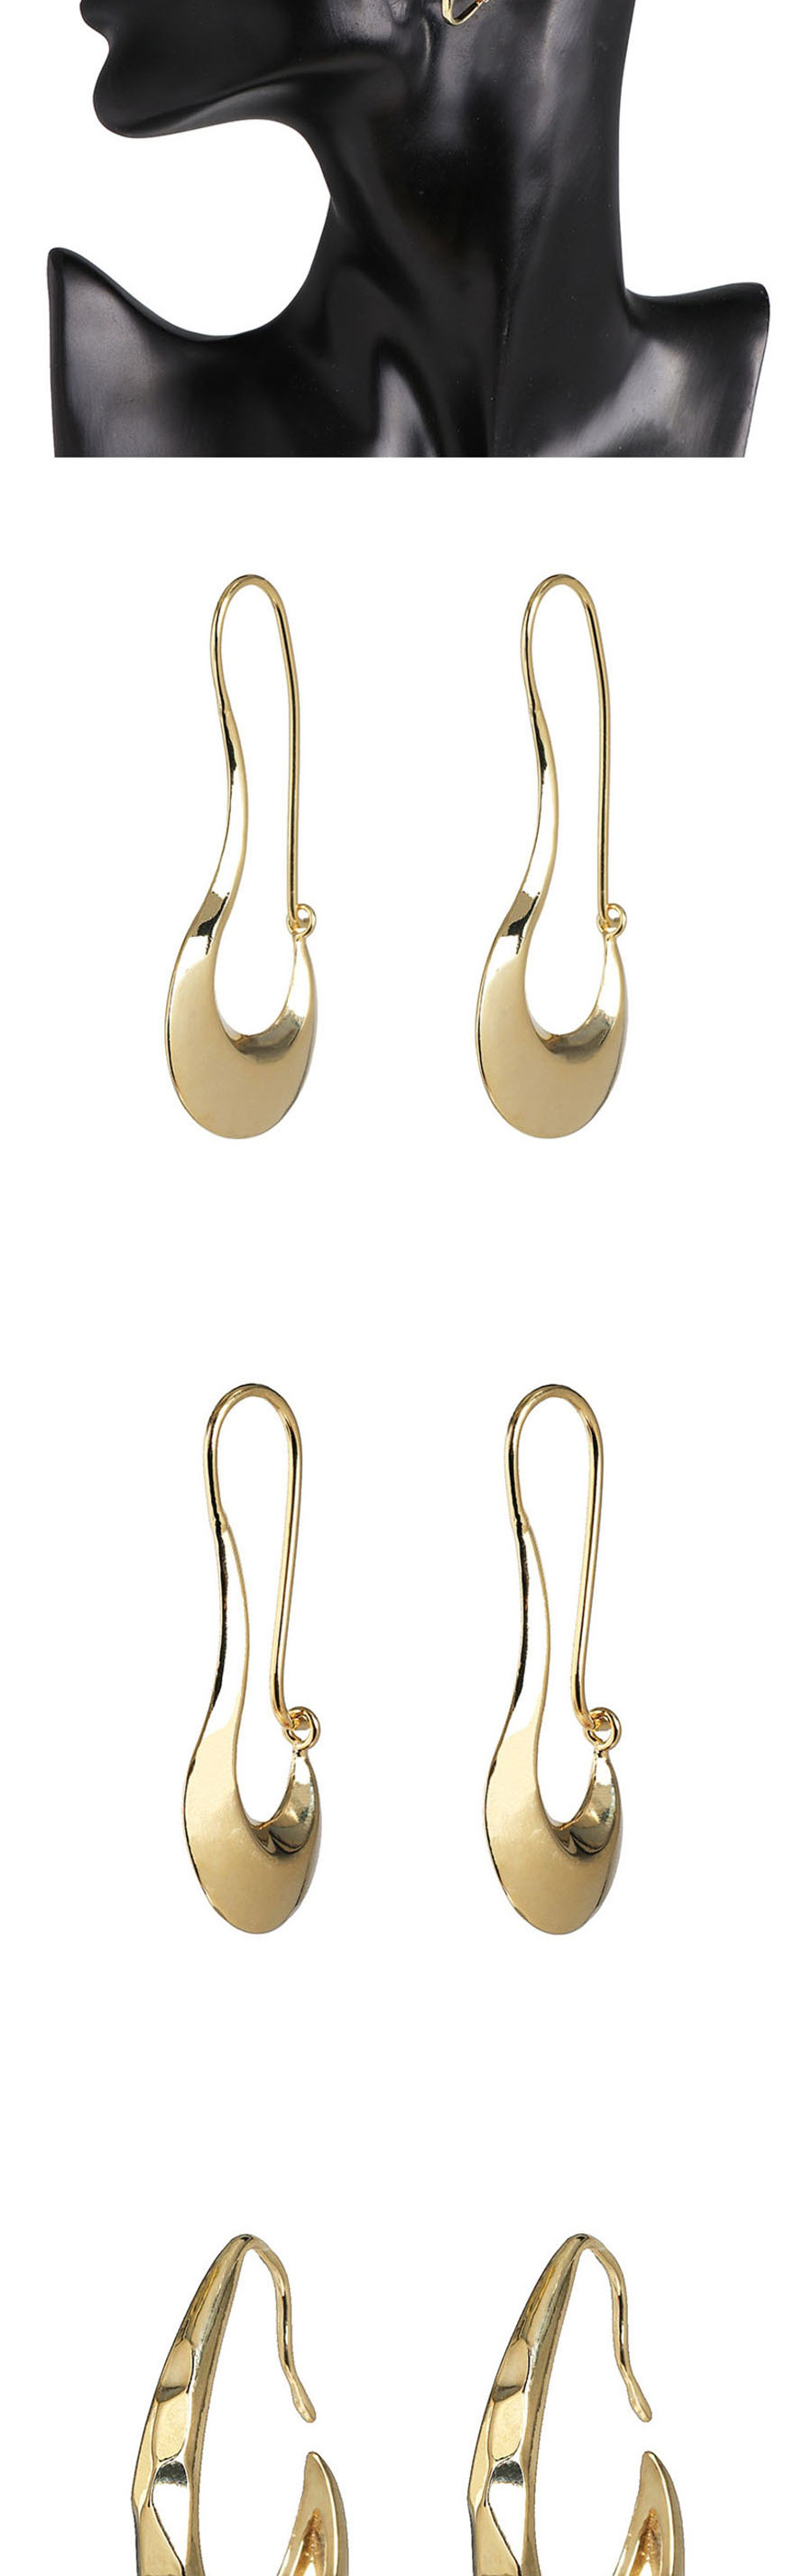 Fashion Golden Eye Diamond Earrings,Drop Earrings